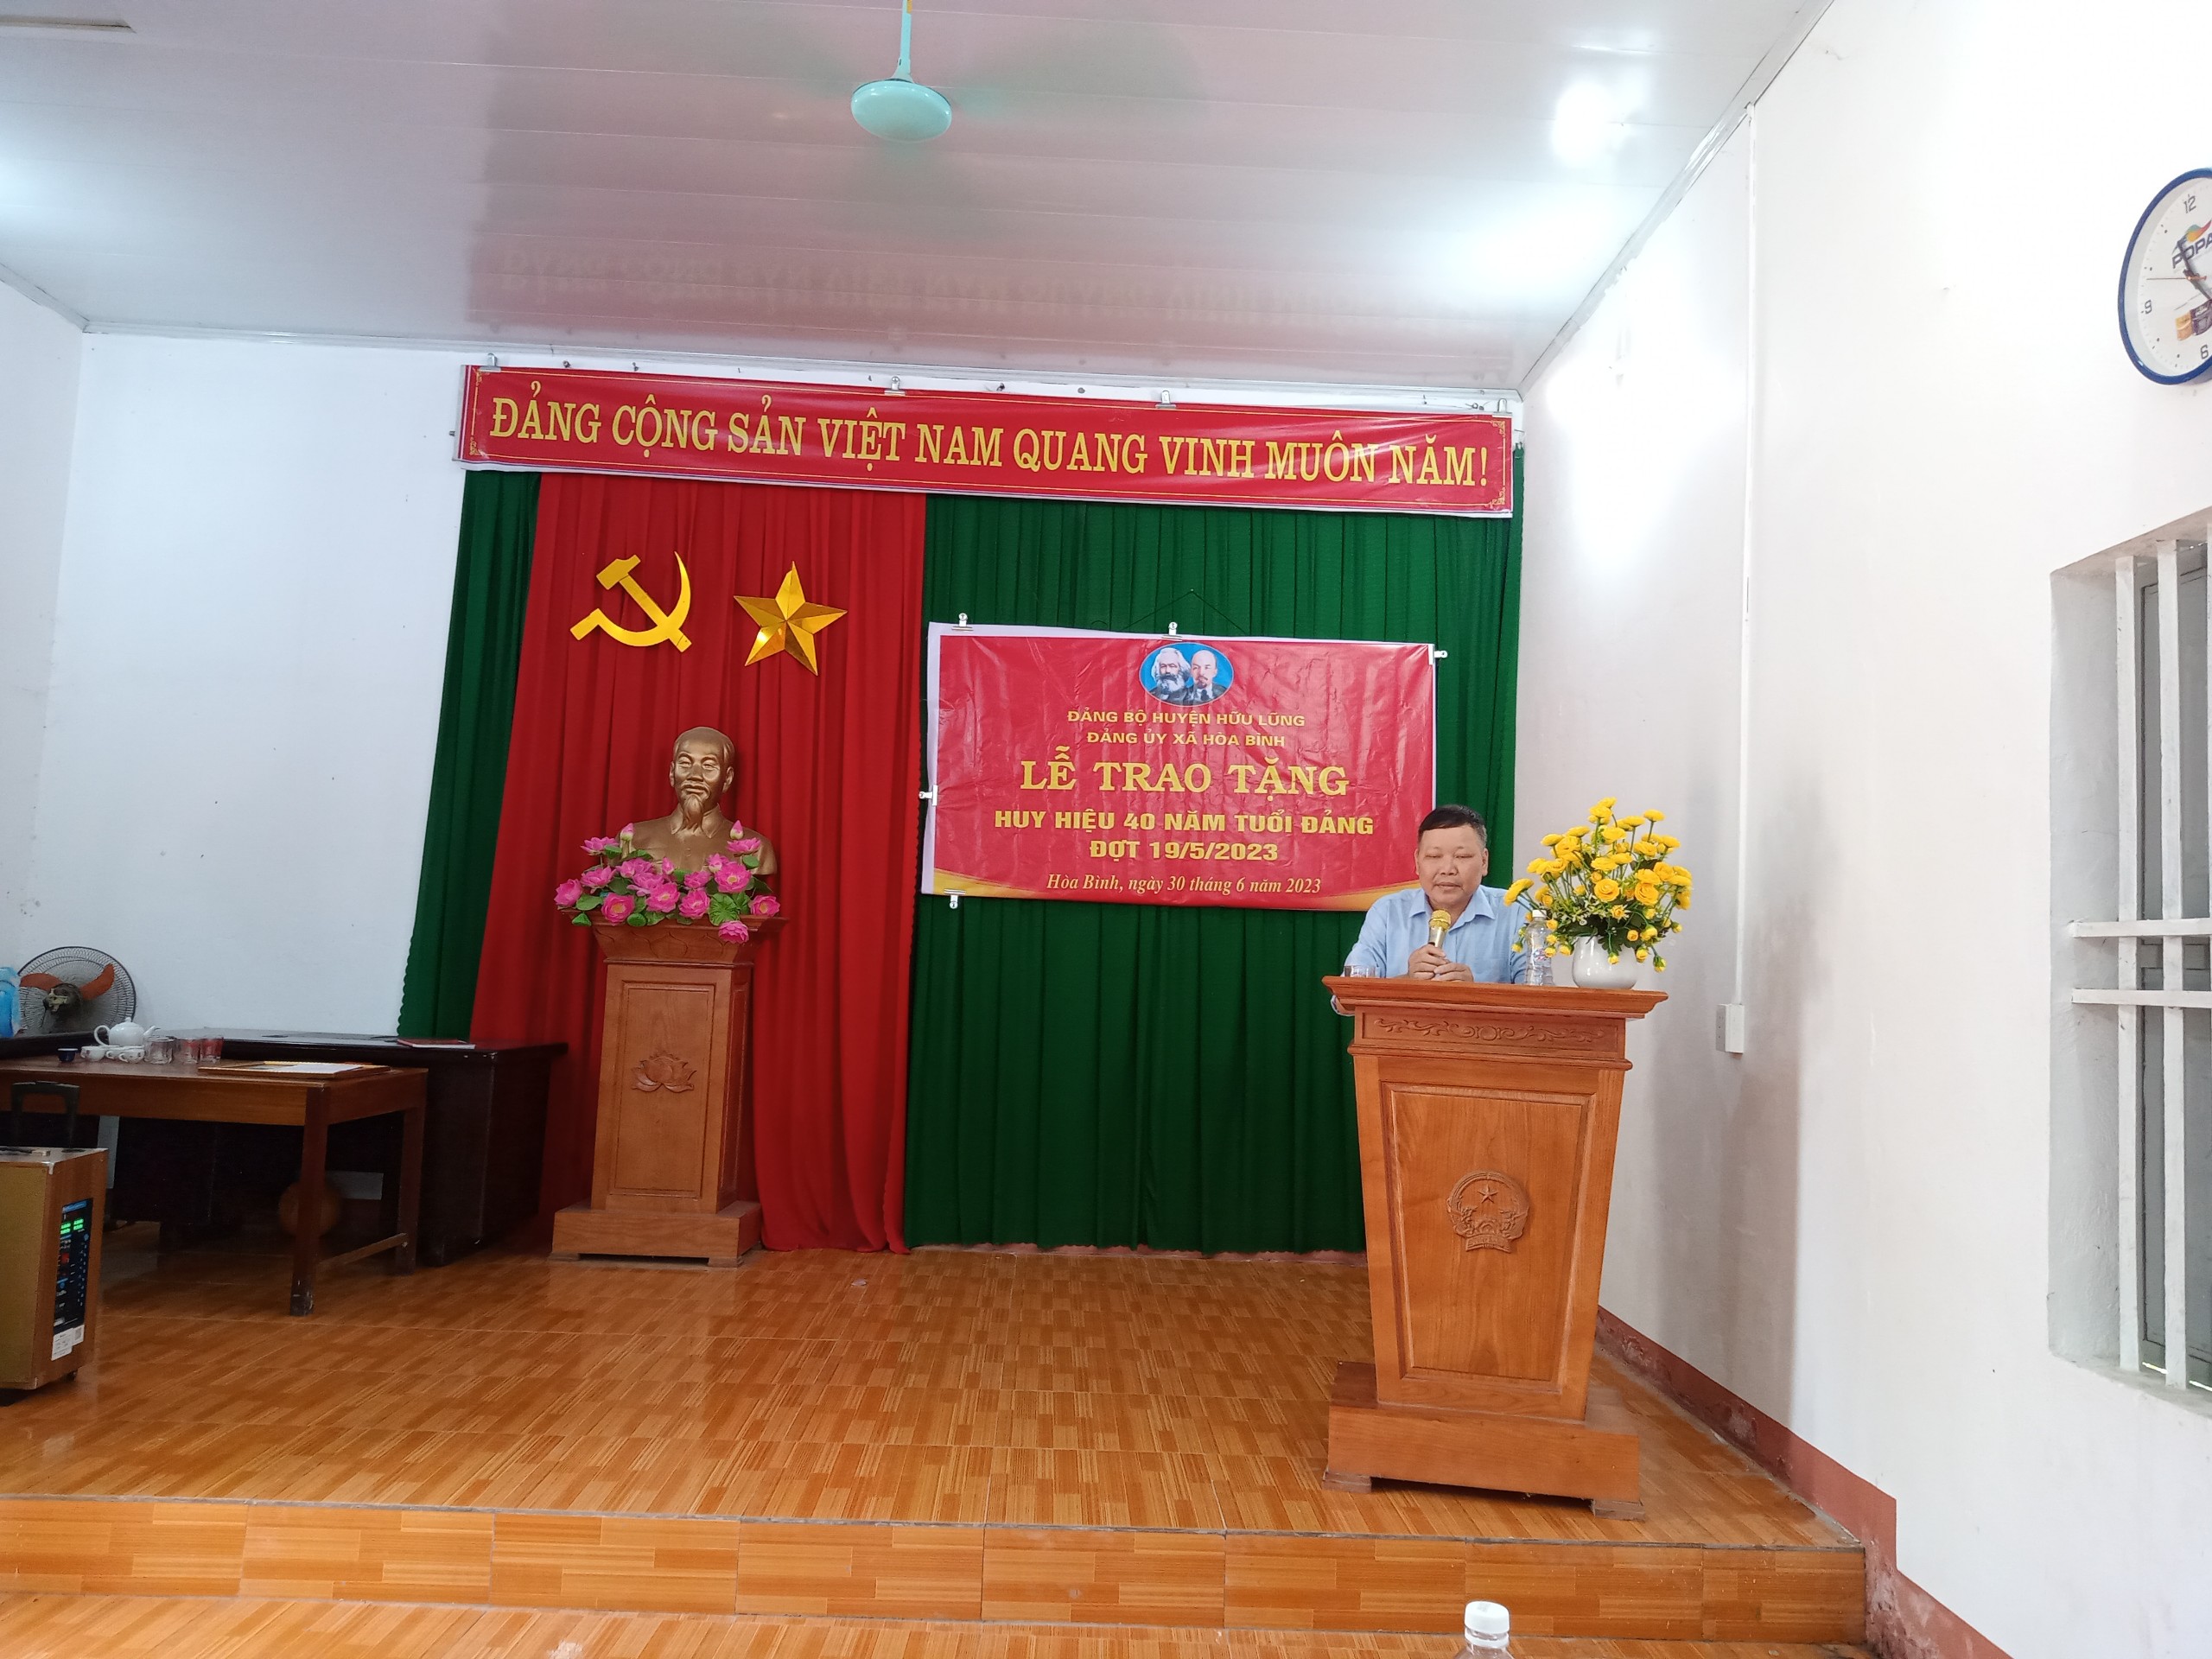 Đồng chí Triệu Văn Thọ, Bí thư Đảng ủy phát biểu tại buổi lễ